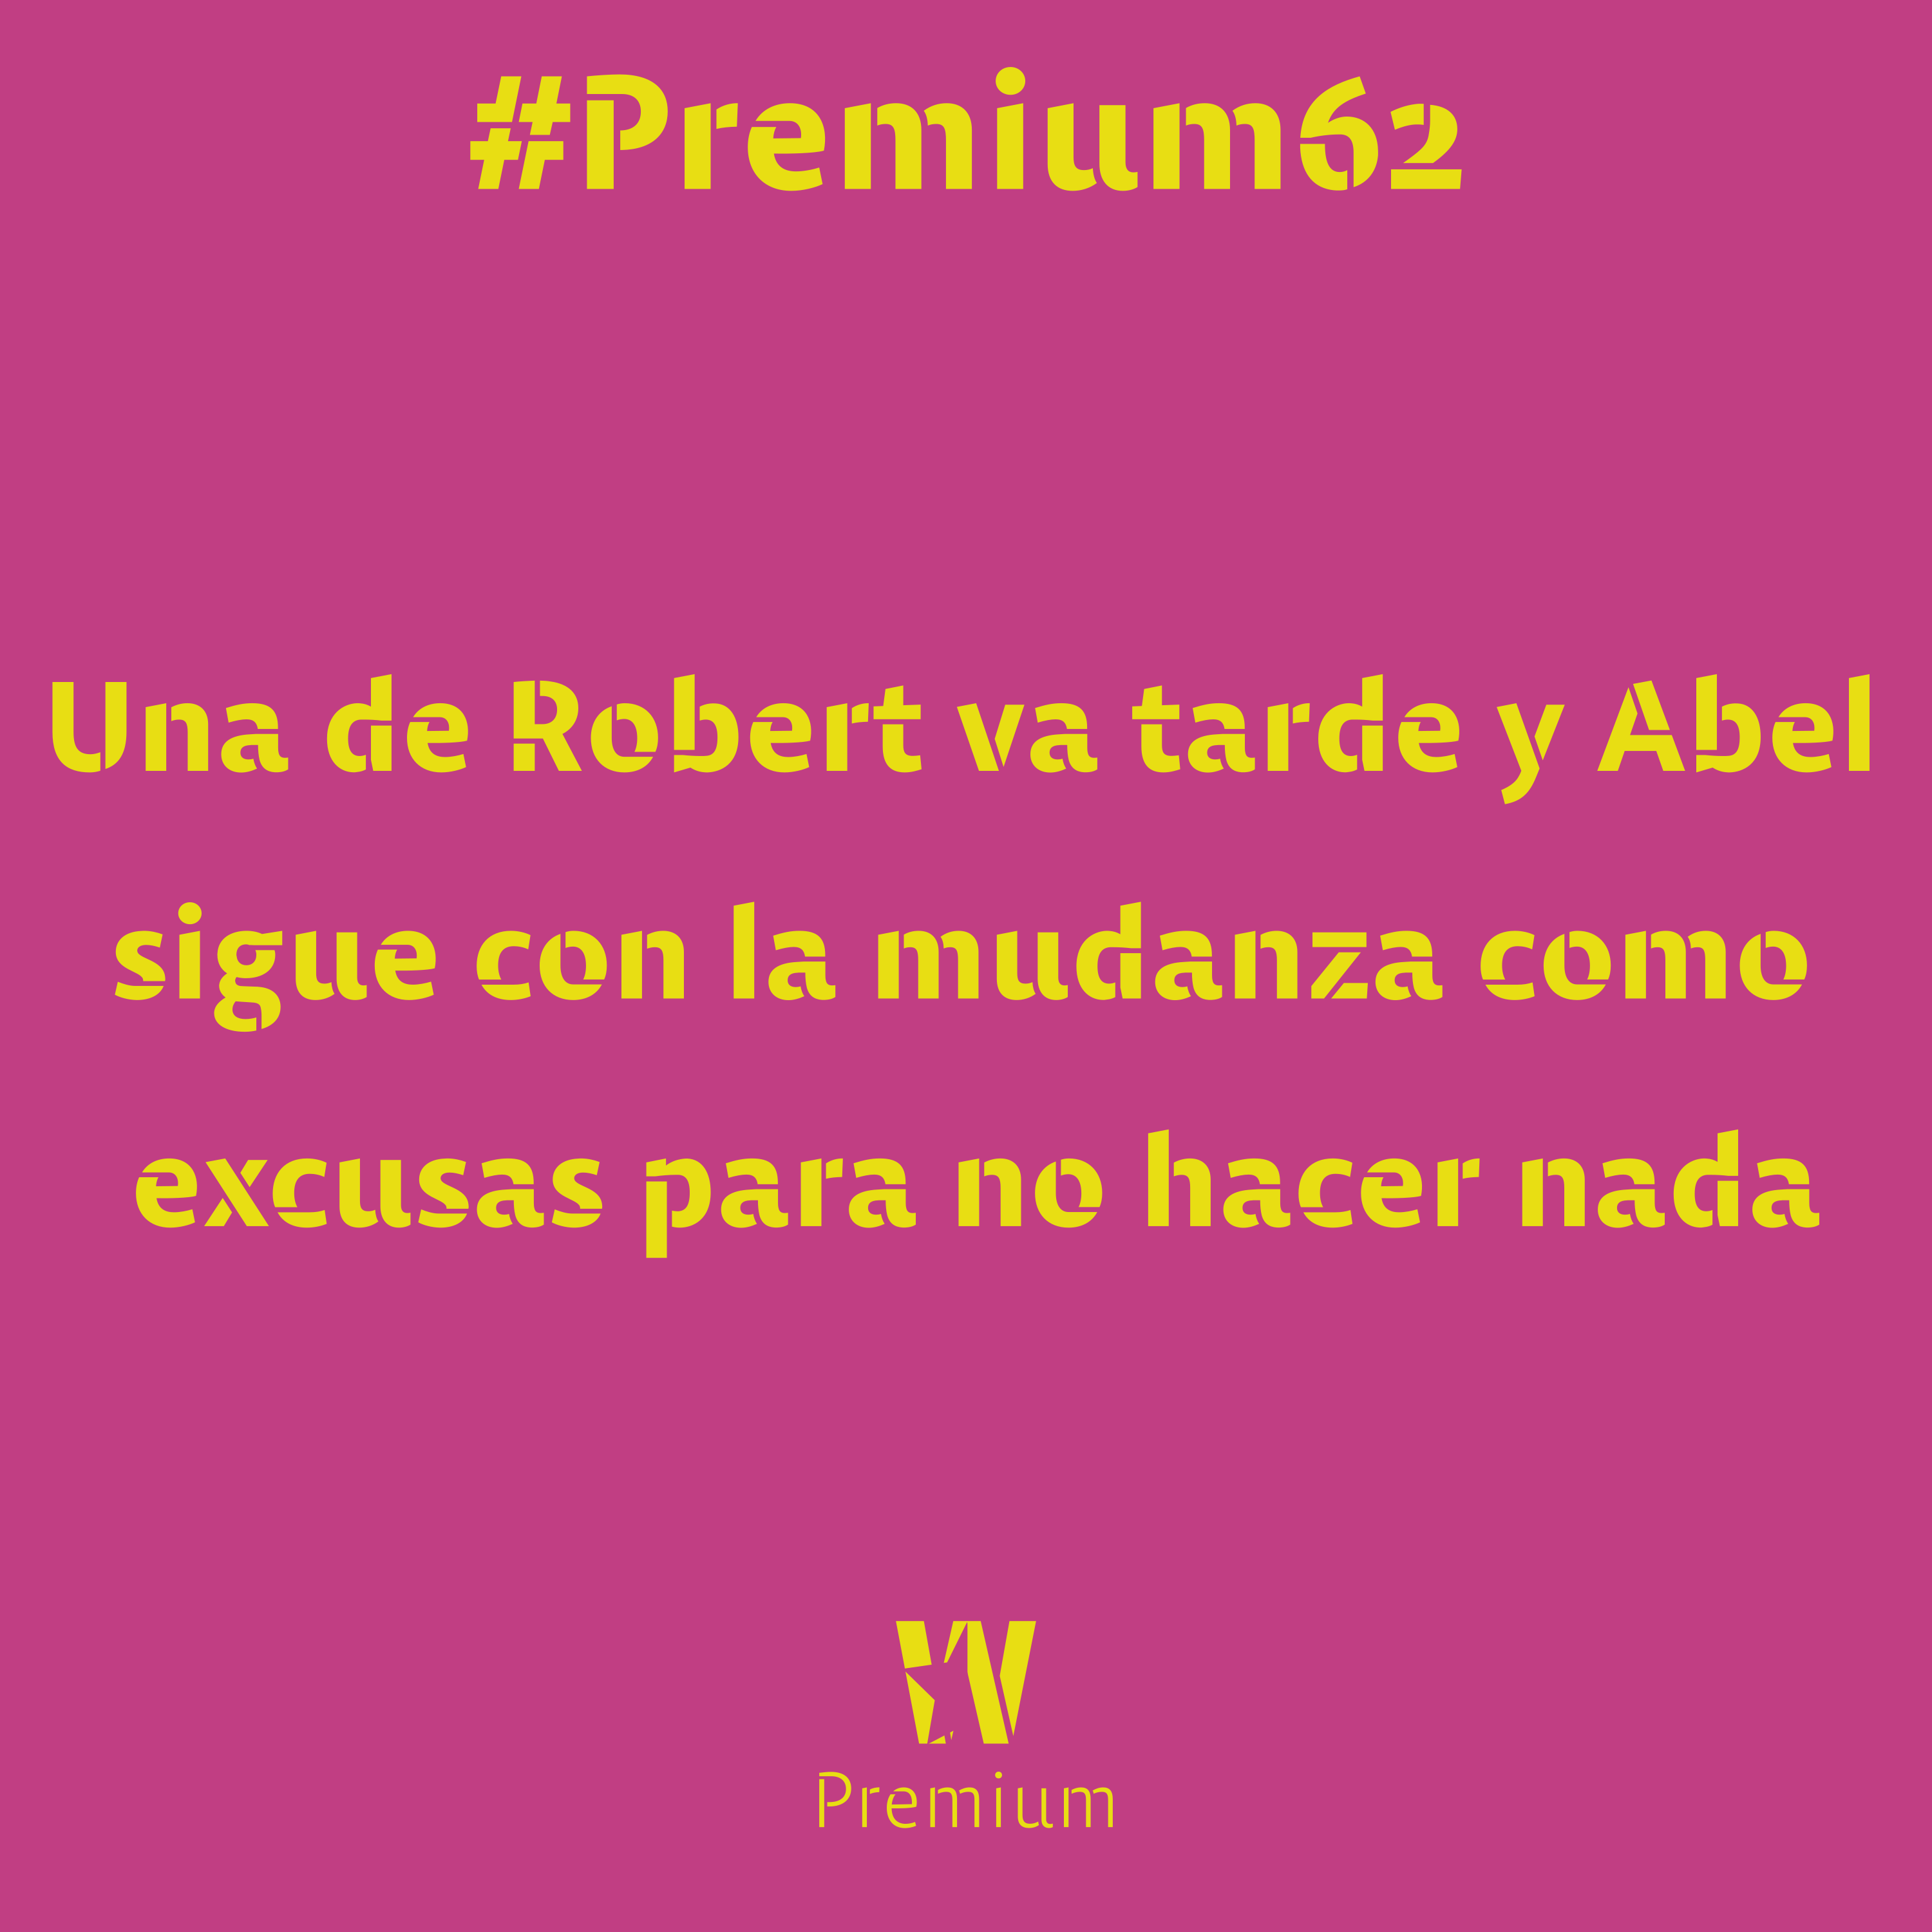 #Premium62 - Una de Robert va tarde y Abel sigue con la mudanza como excusas para no hacer nada